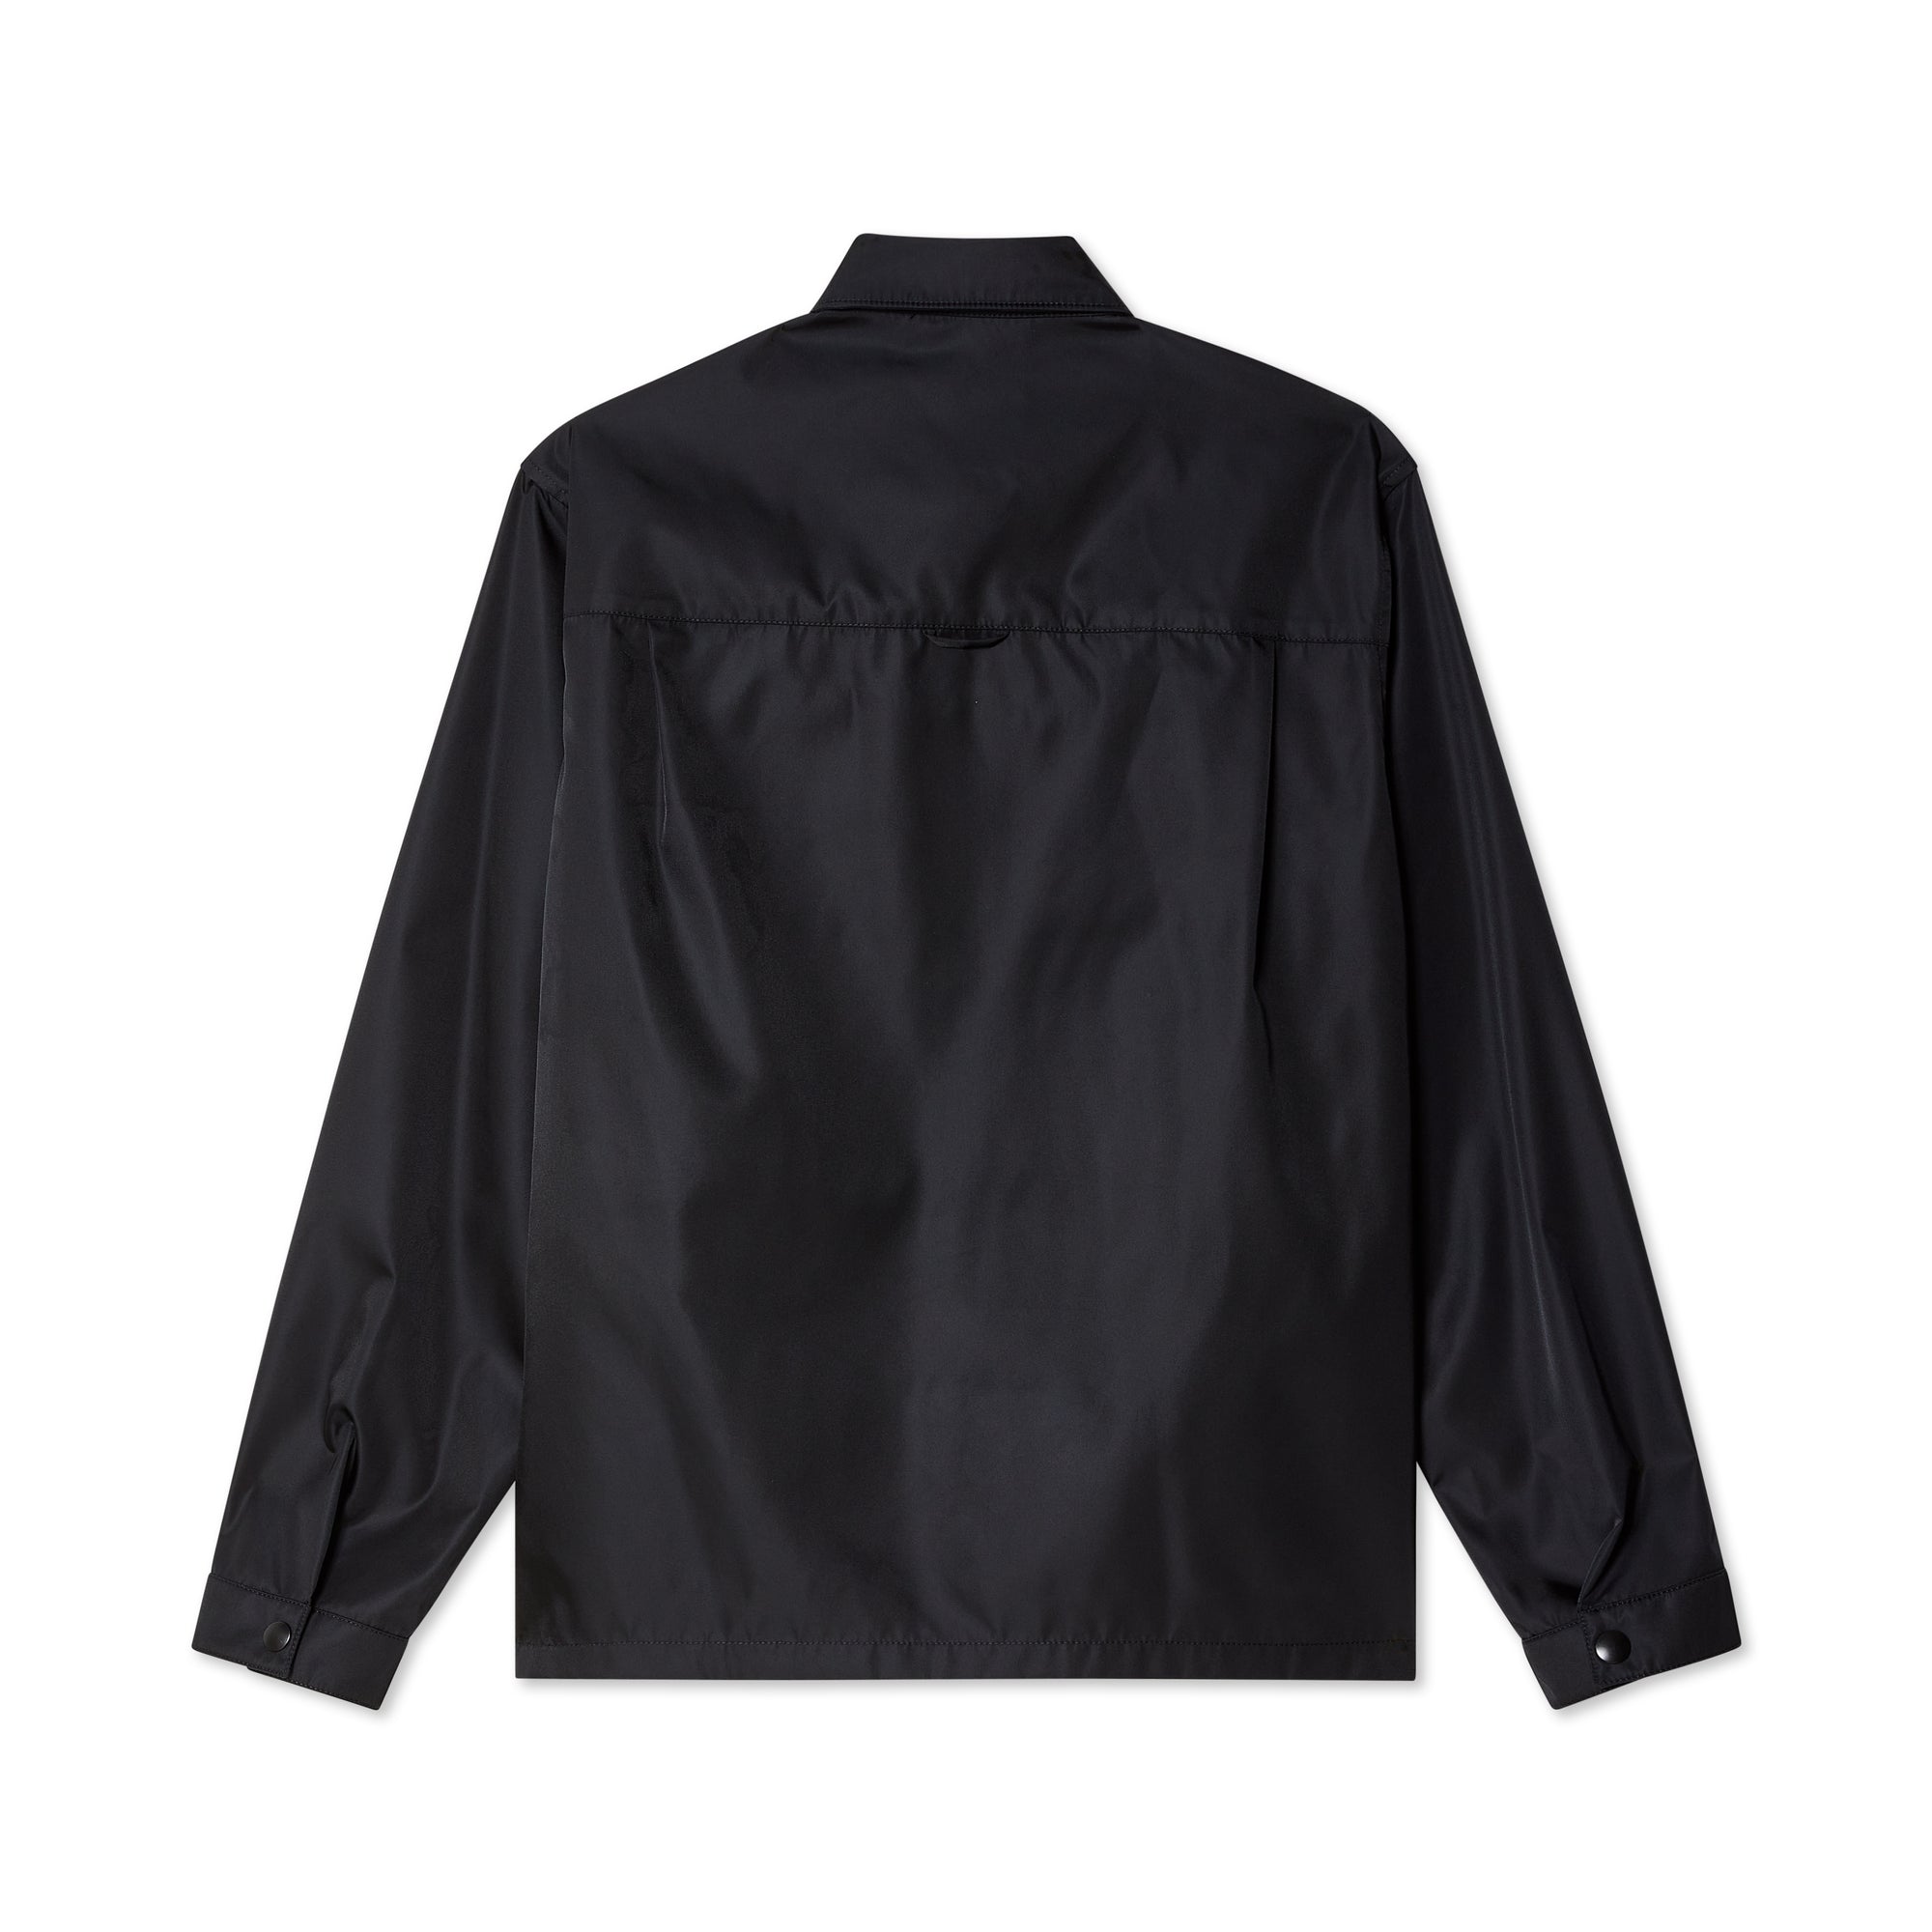 Prada - Men's Camicia Shirt - (Black) view 2